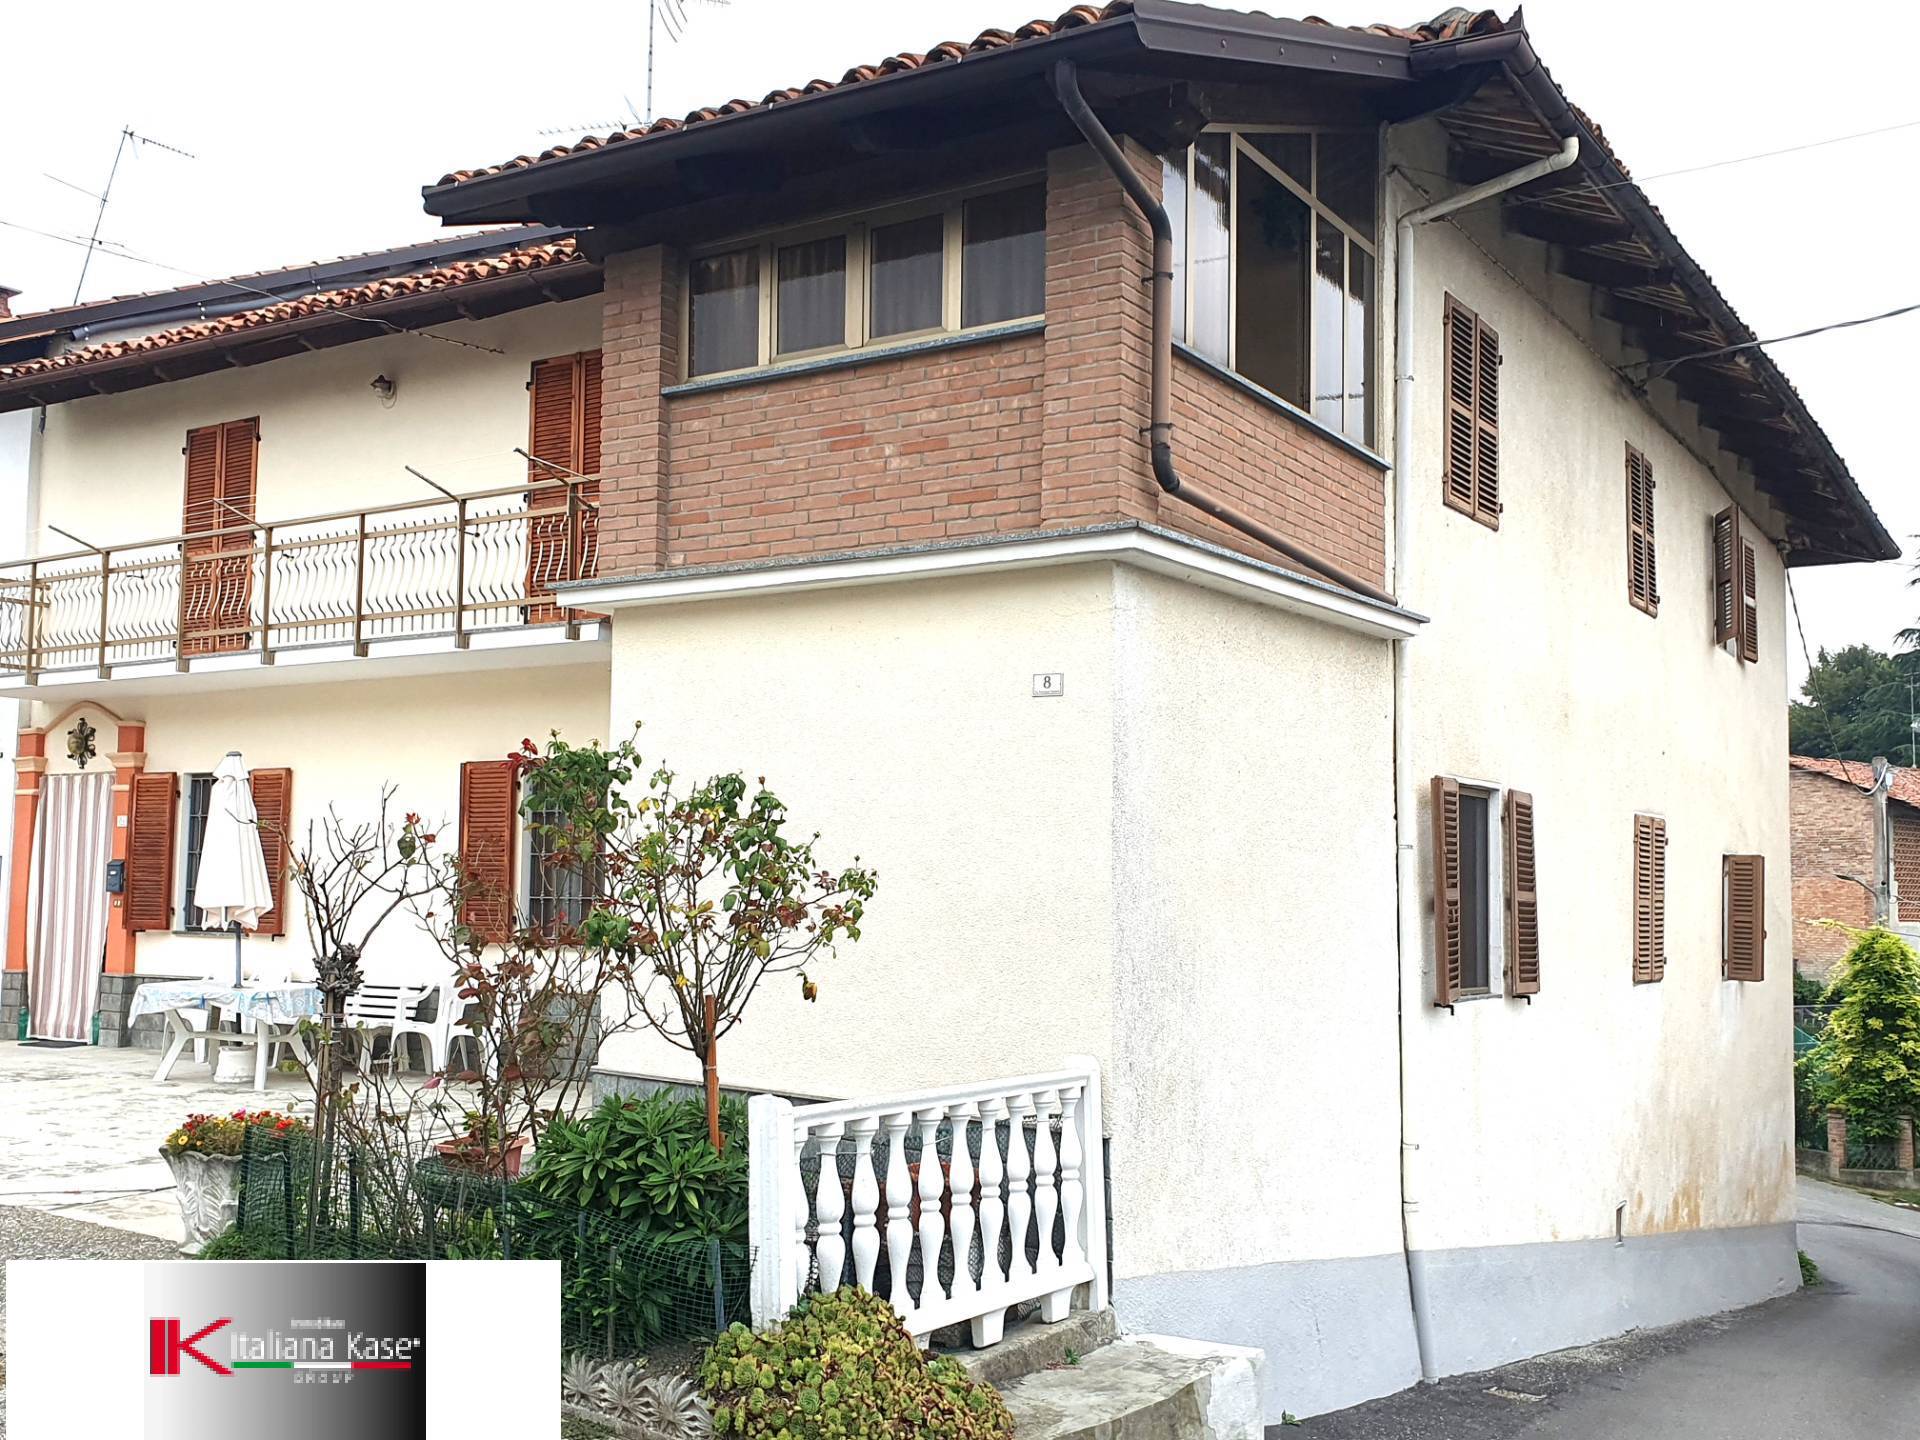 Soluzione Semindipendente in vendita a Robella, 5 locali, zona Zona: Cortiglione, prezzo € 109.000 | CambioCasa.it